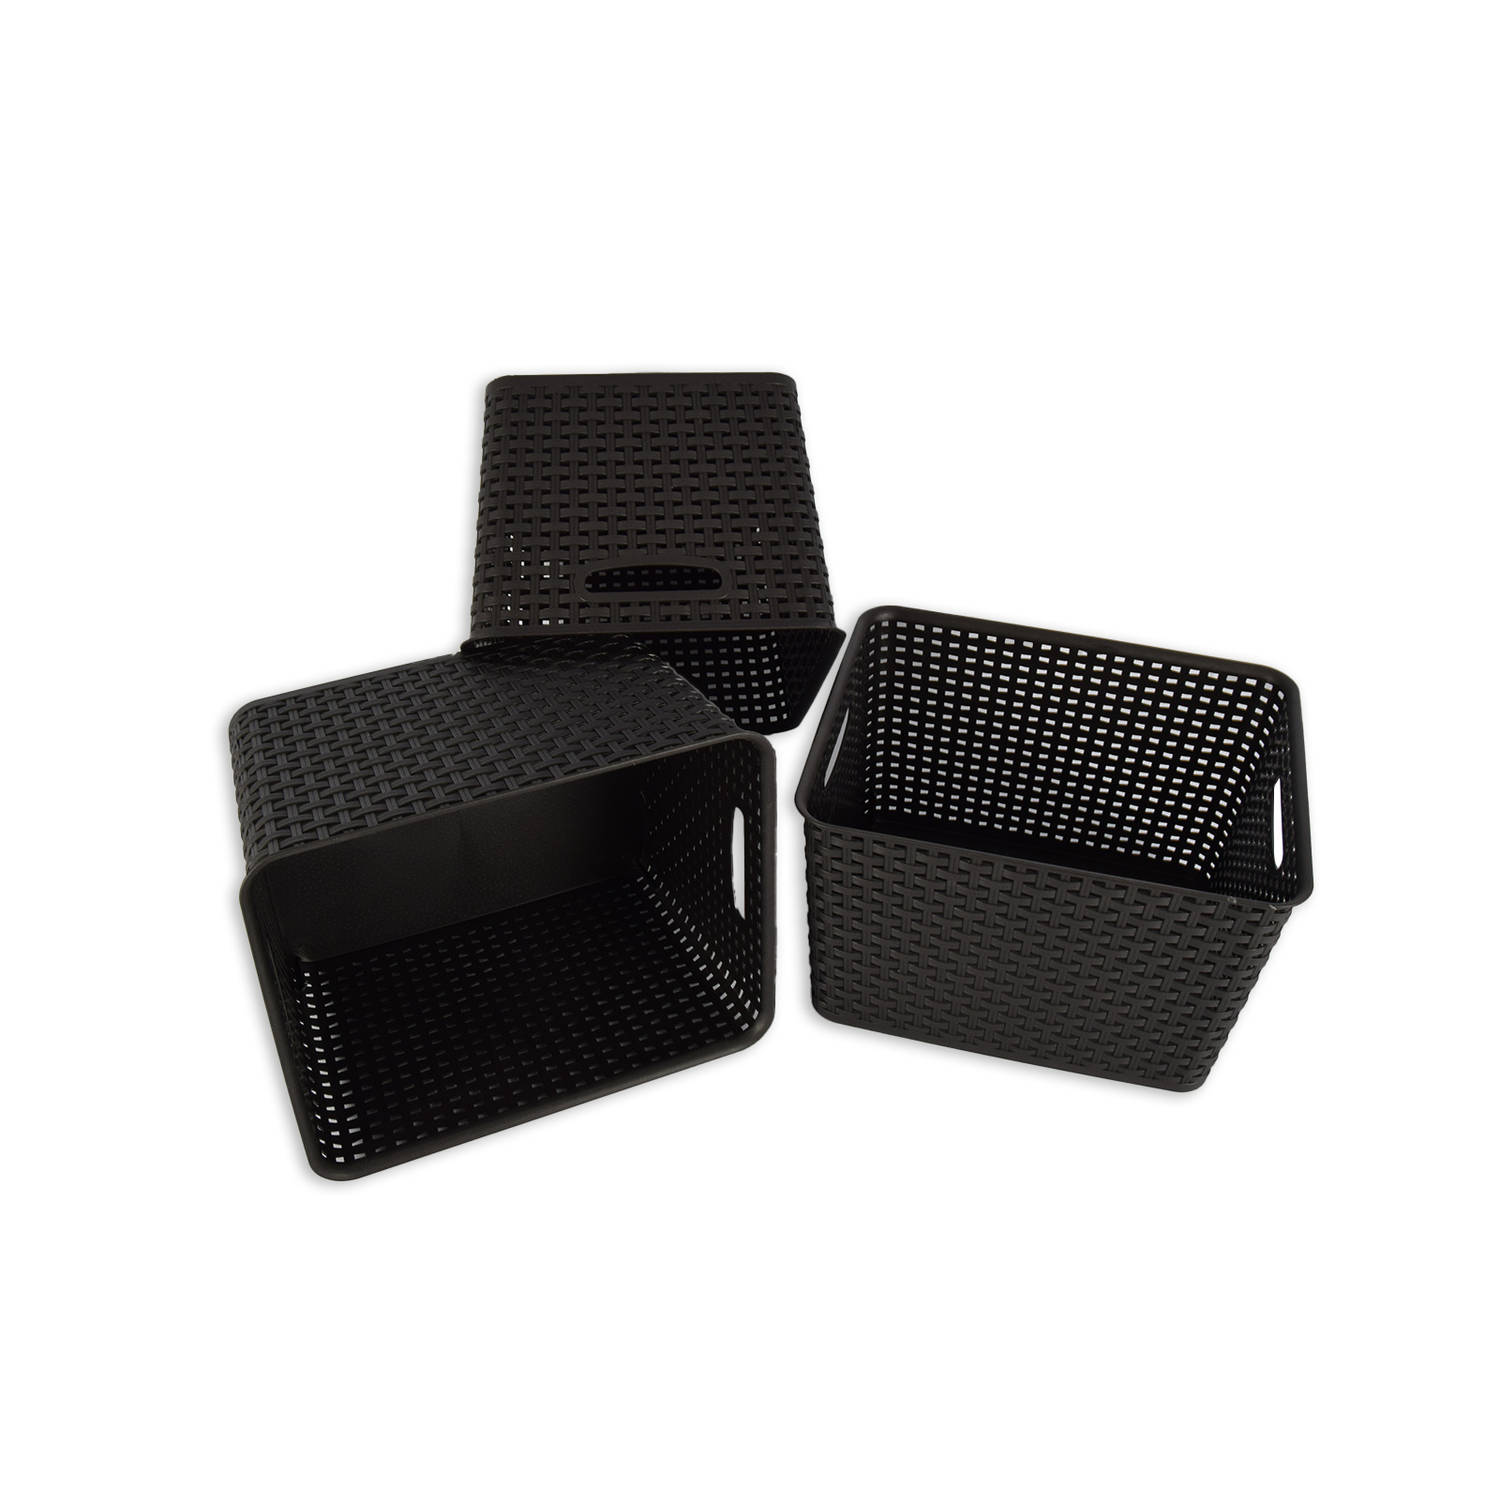 Elegante Set van 3 Zwarte Kunststof Opbergboxen - 17 Liter Capaciteit - Voor Woonkamer, Huishouden, en Speelgoedopslag